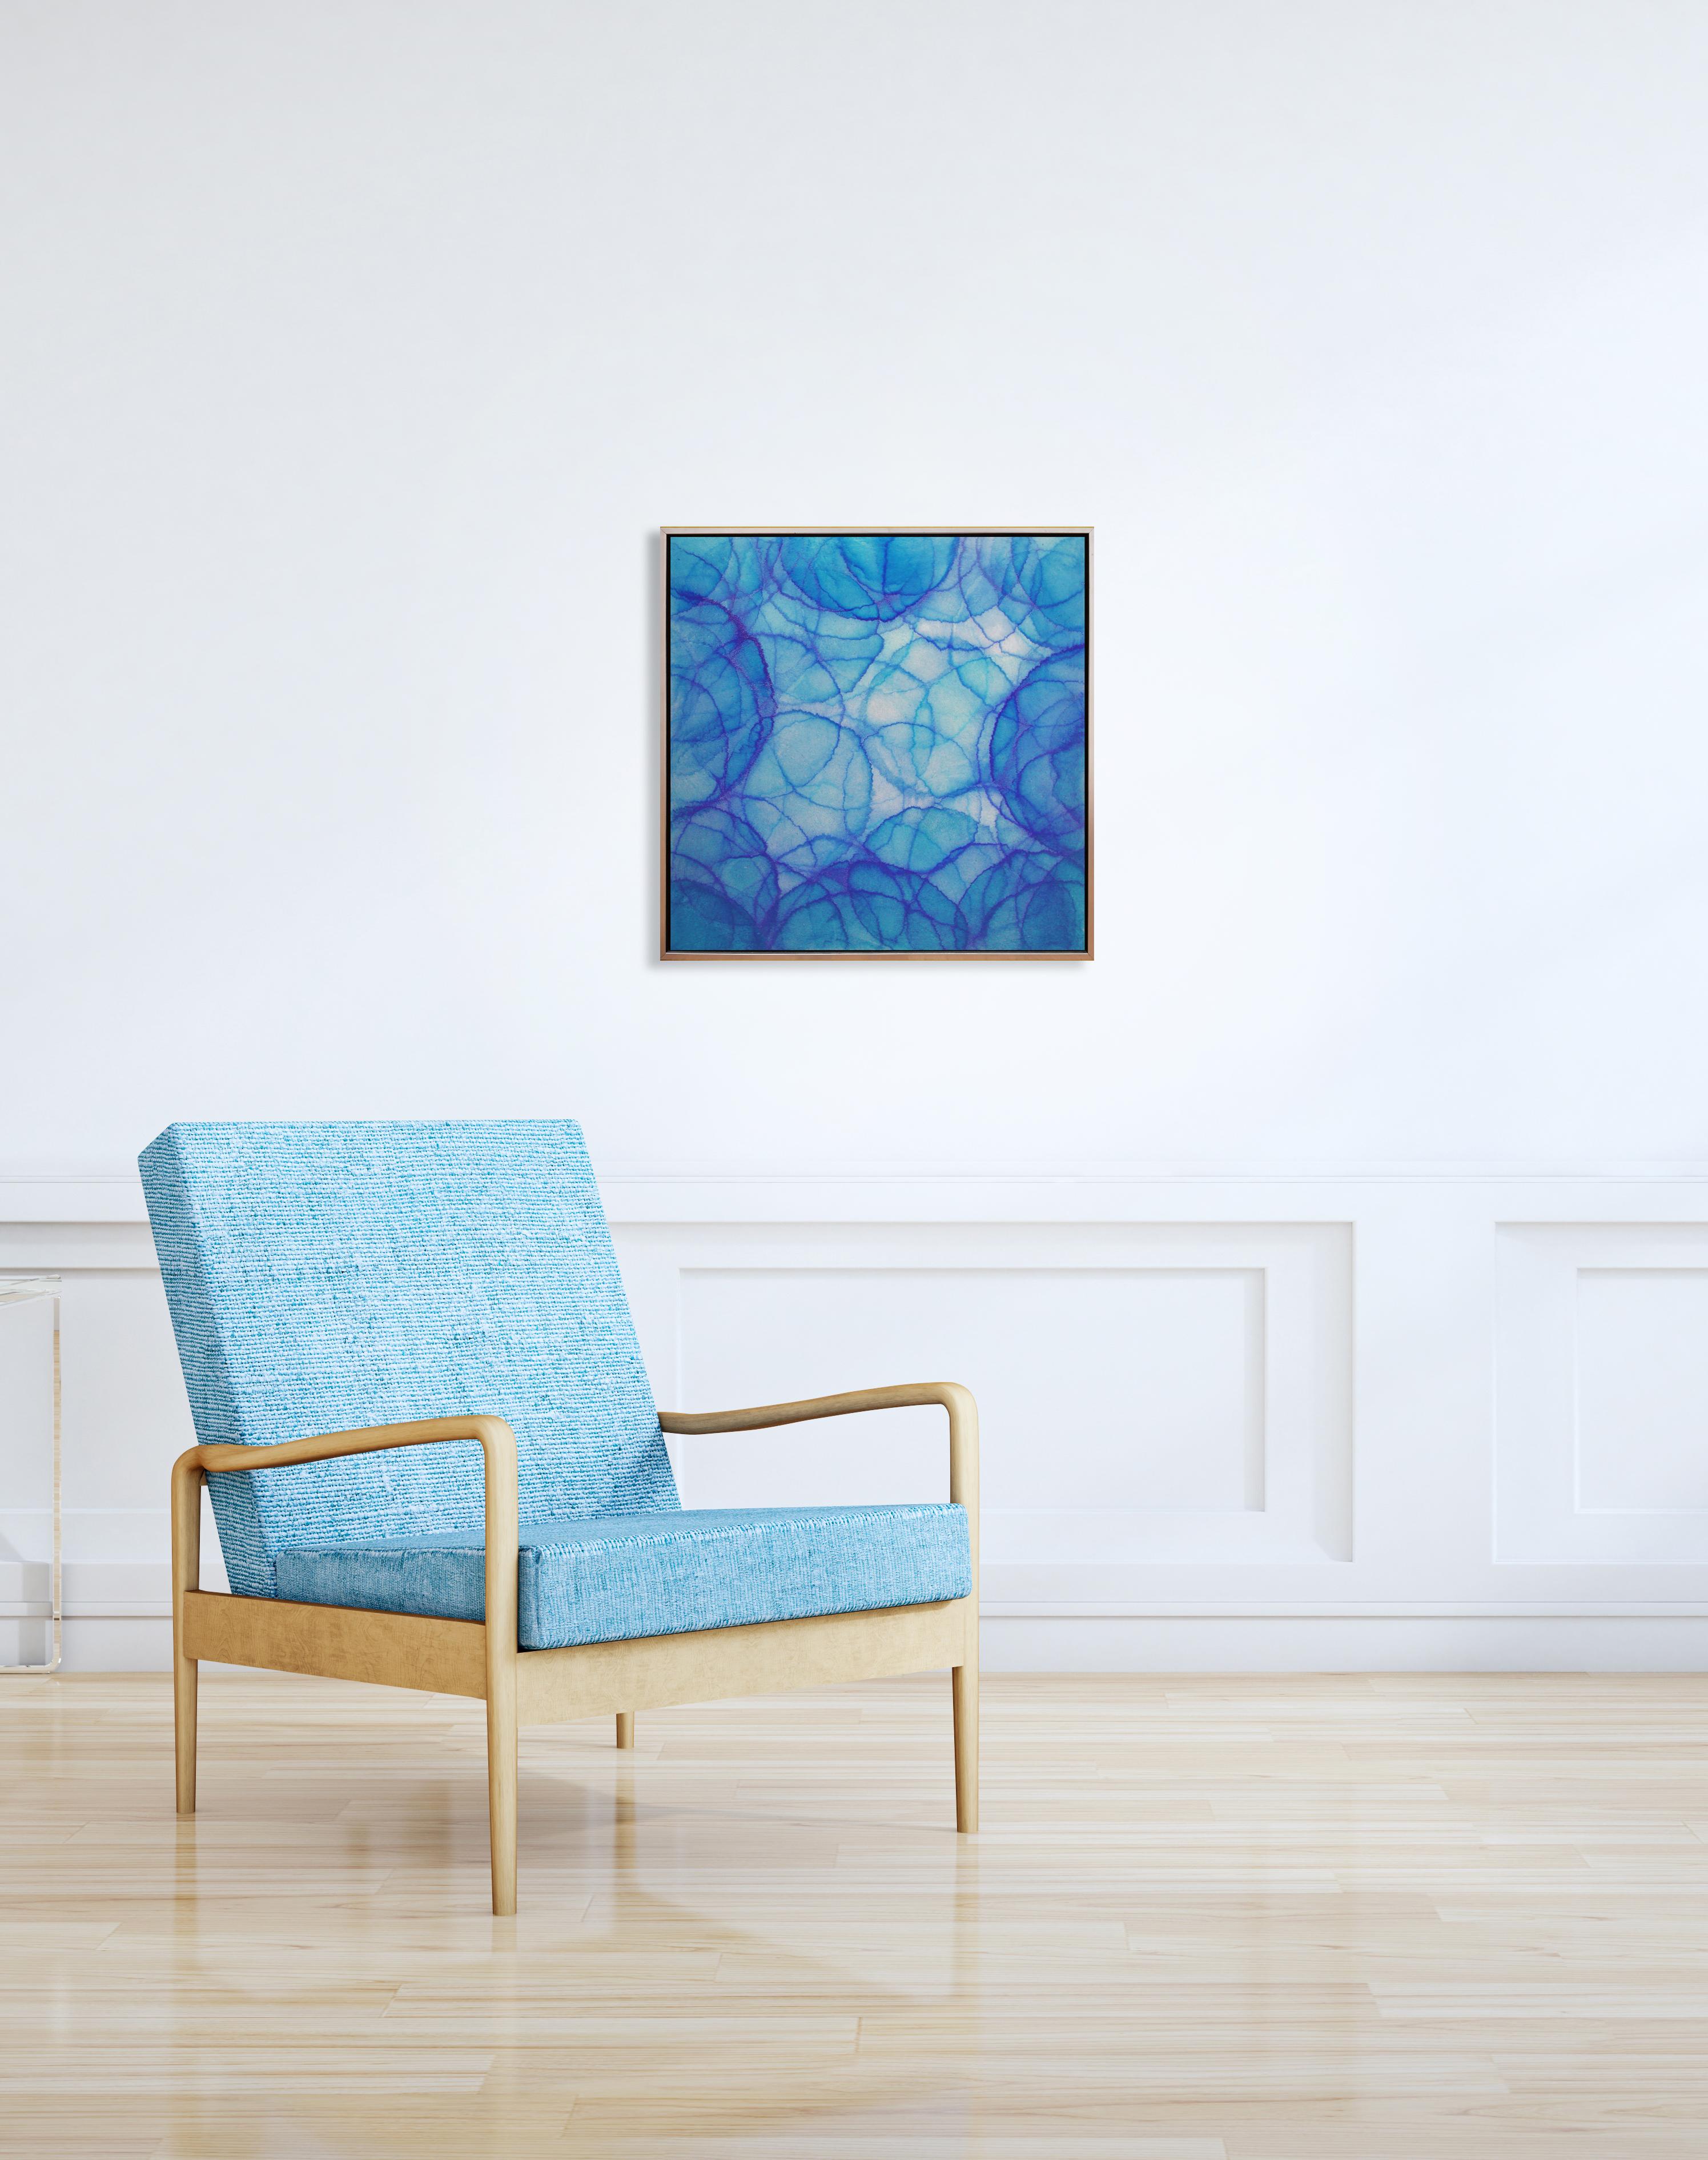 Cette peinture abstraite de Roger Mudre présente une palette de bleus et de turquoises froids et des formes circulaires légères superposées dans toute la composition. Réalisé avec de la peinture acrylique sur une feuille de métal sur un panneau